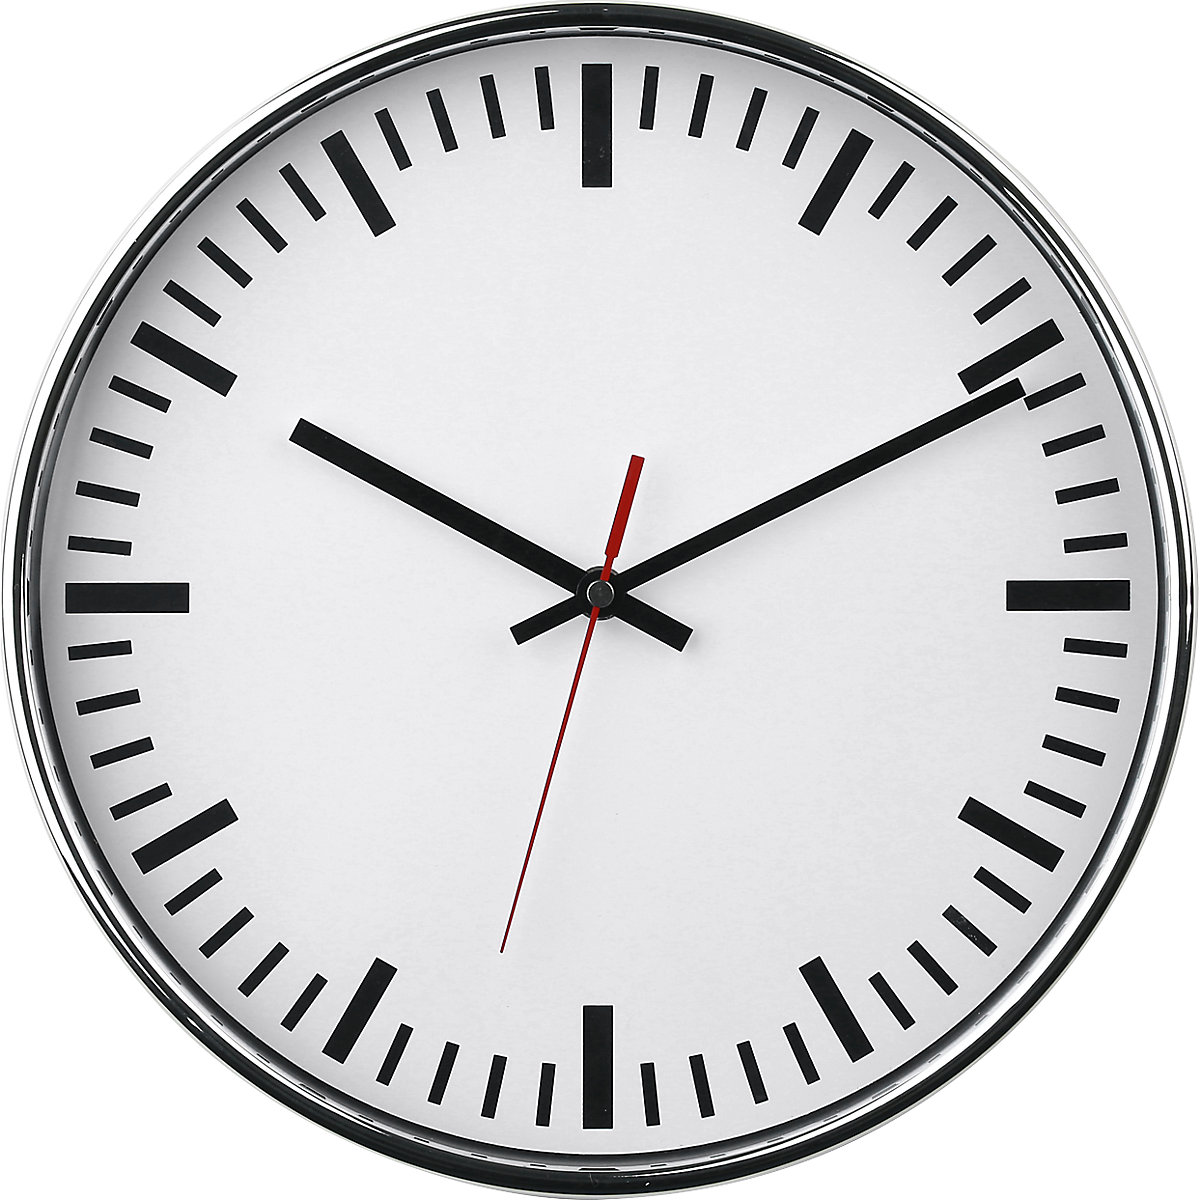 Reloj de pared, Ø 300 mm, reloj de cuarzo, esfera blanca con rayas